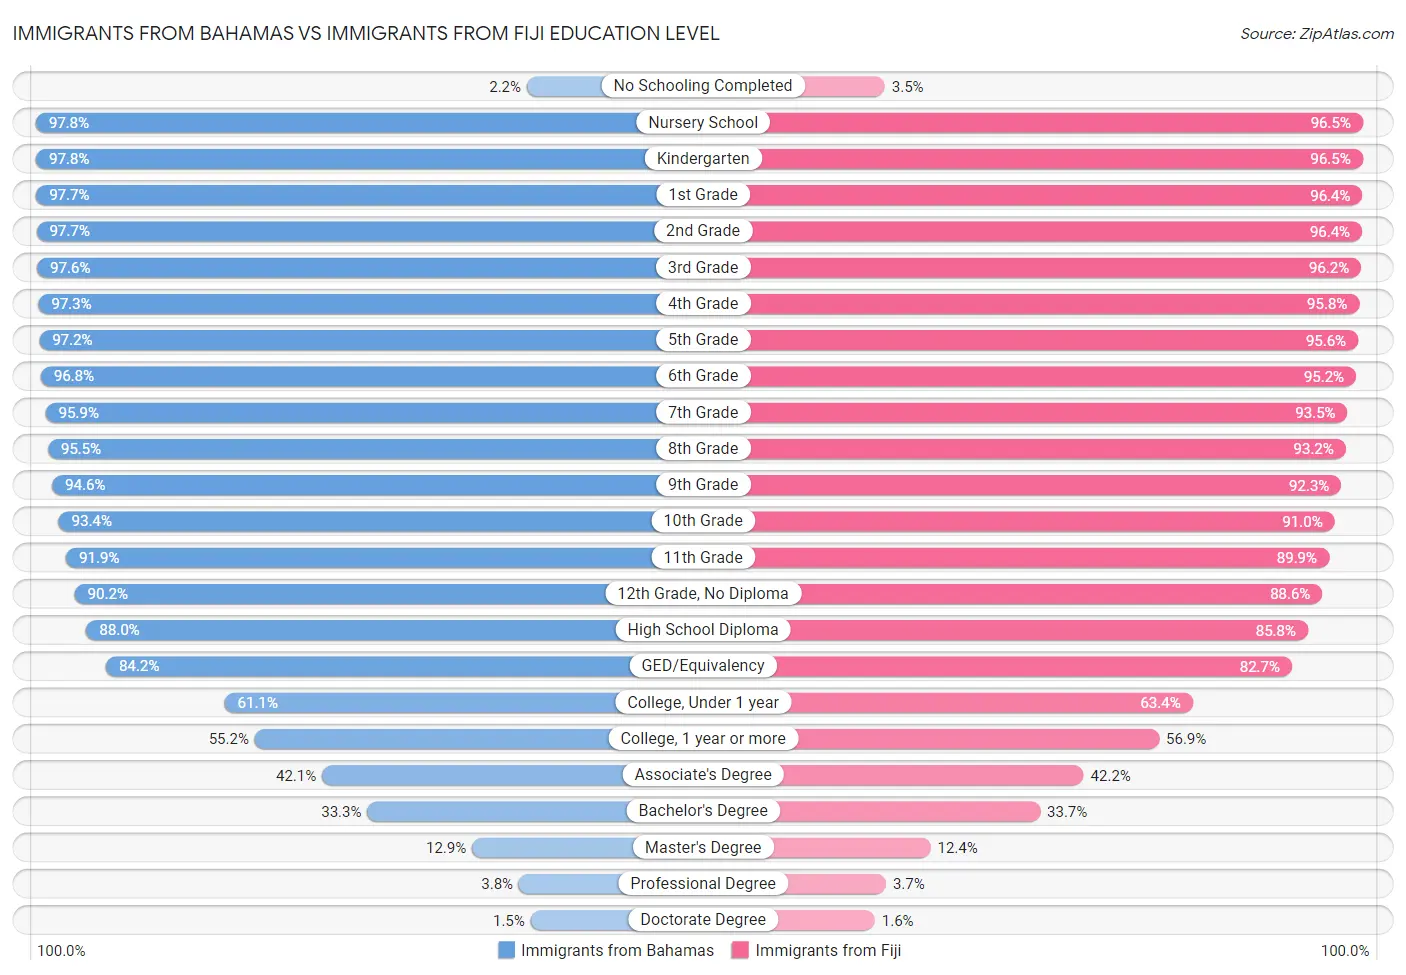 Immigrants from Bahamas vs Immigrants from Fiji Education Level